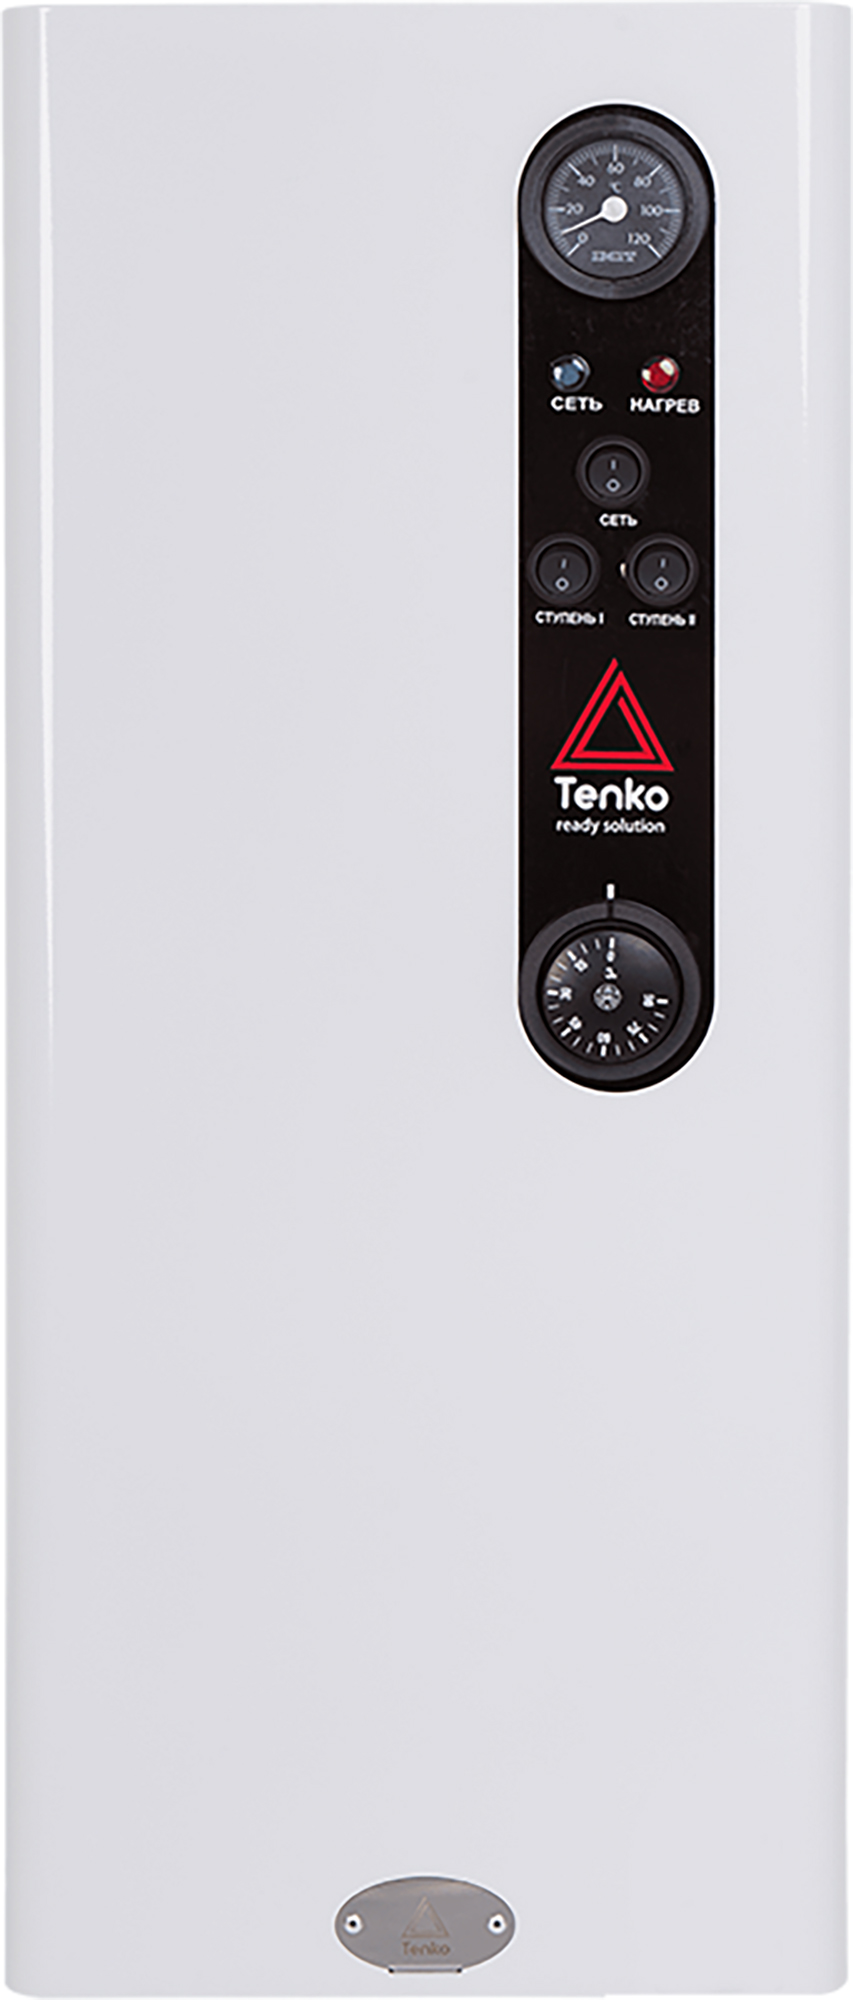 Однофазный электрокотел на 220 Вольт Tenko Стандарт 4,5 220(d)